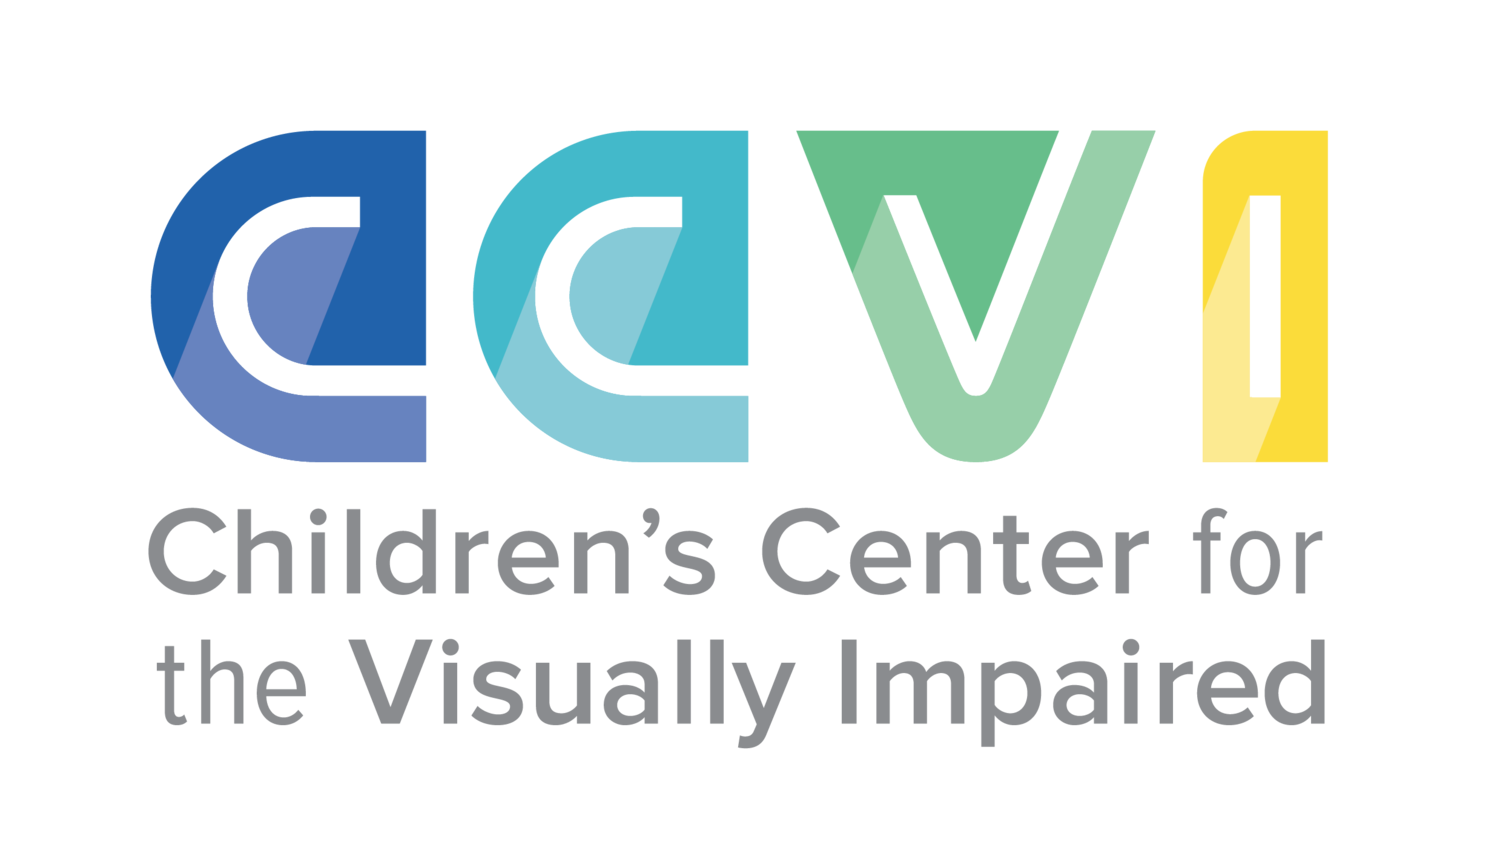 CCVI logo